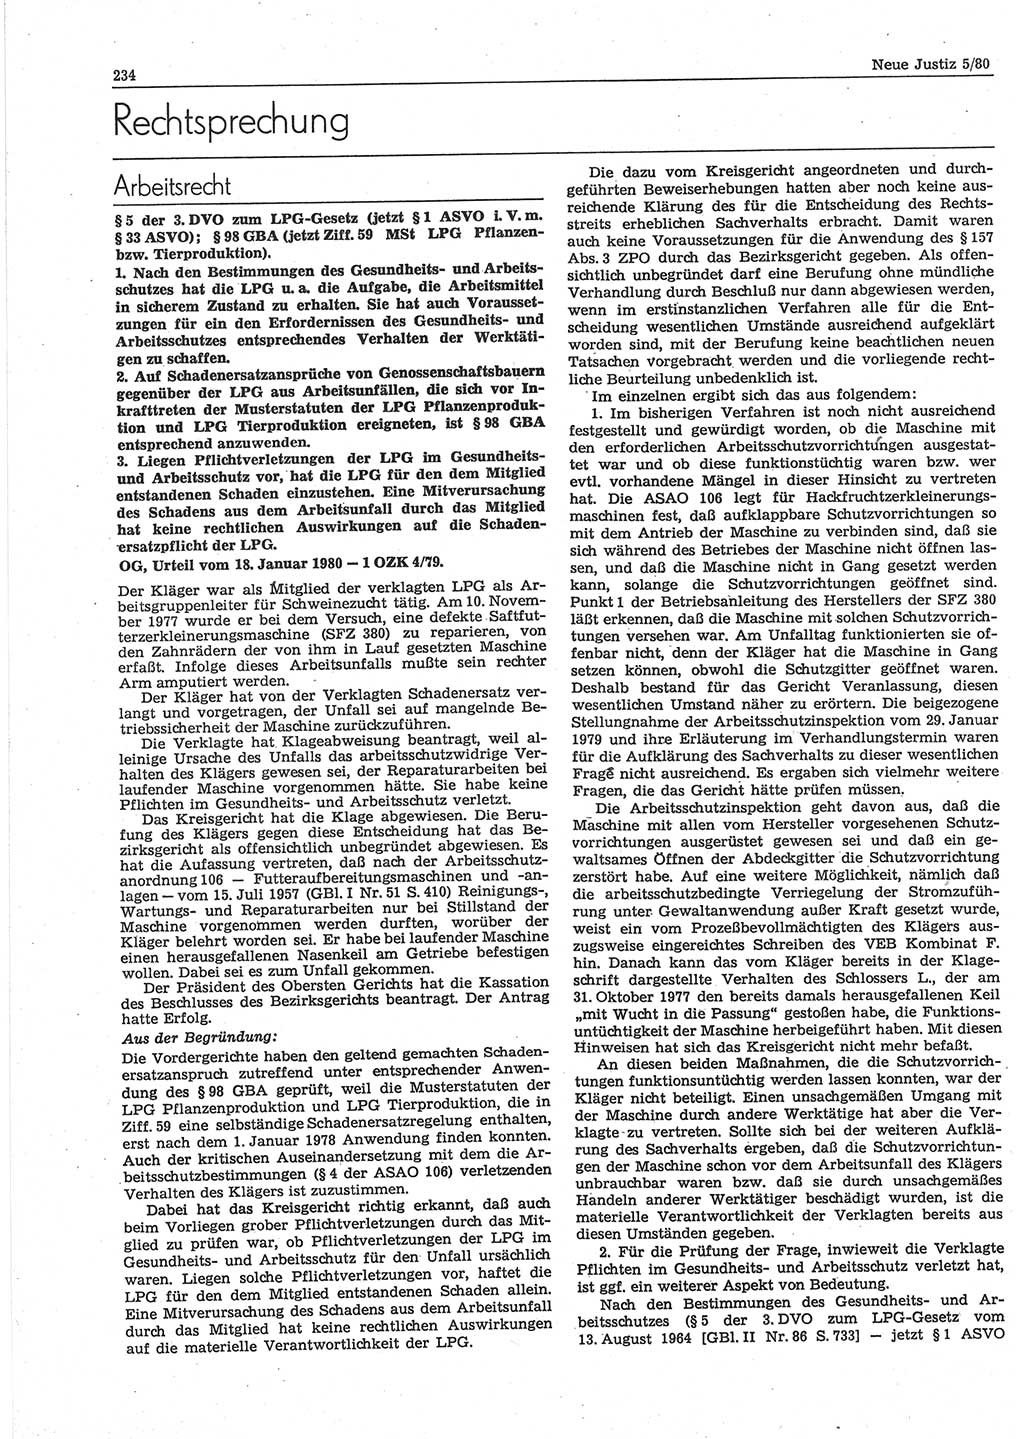 Neue Justiz (NJ), Zeitschrift für sozialistisches Recht und Gesetzlichkeit [Deutsche Demokratische Republik (DDR)], 34. Jahrgang 1980, Seite 234 (NJ DDR 1980, S. 234)